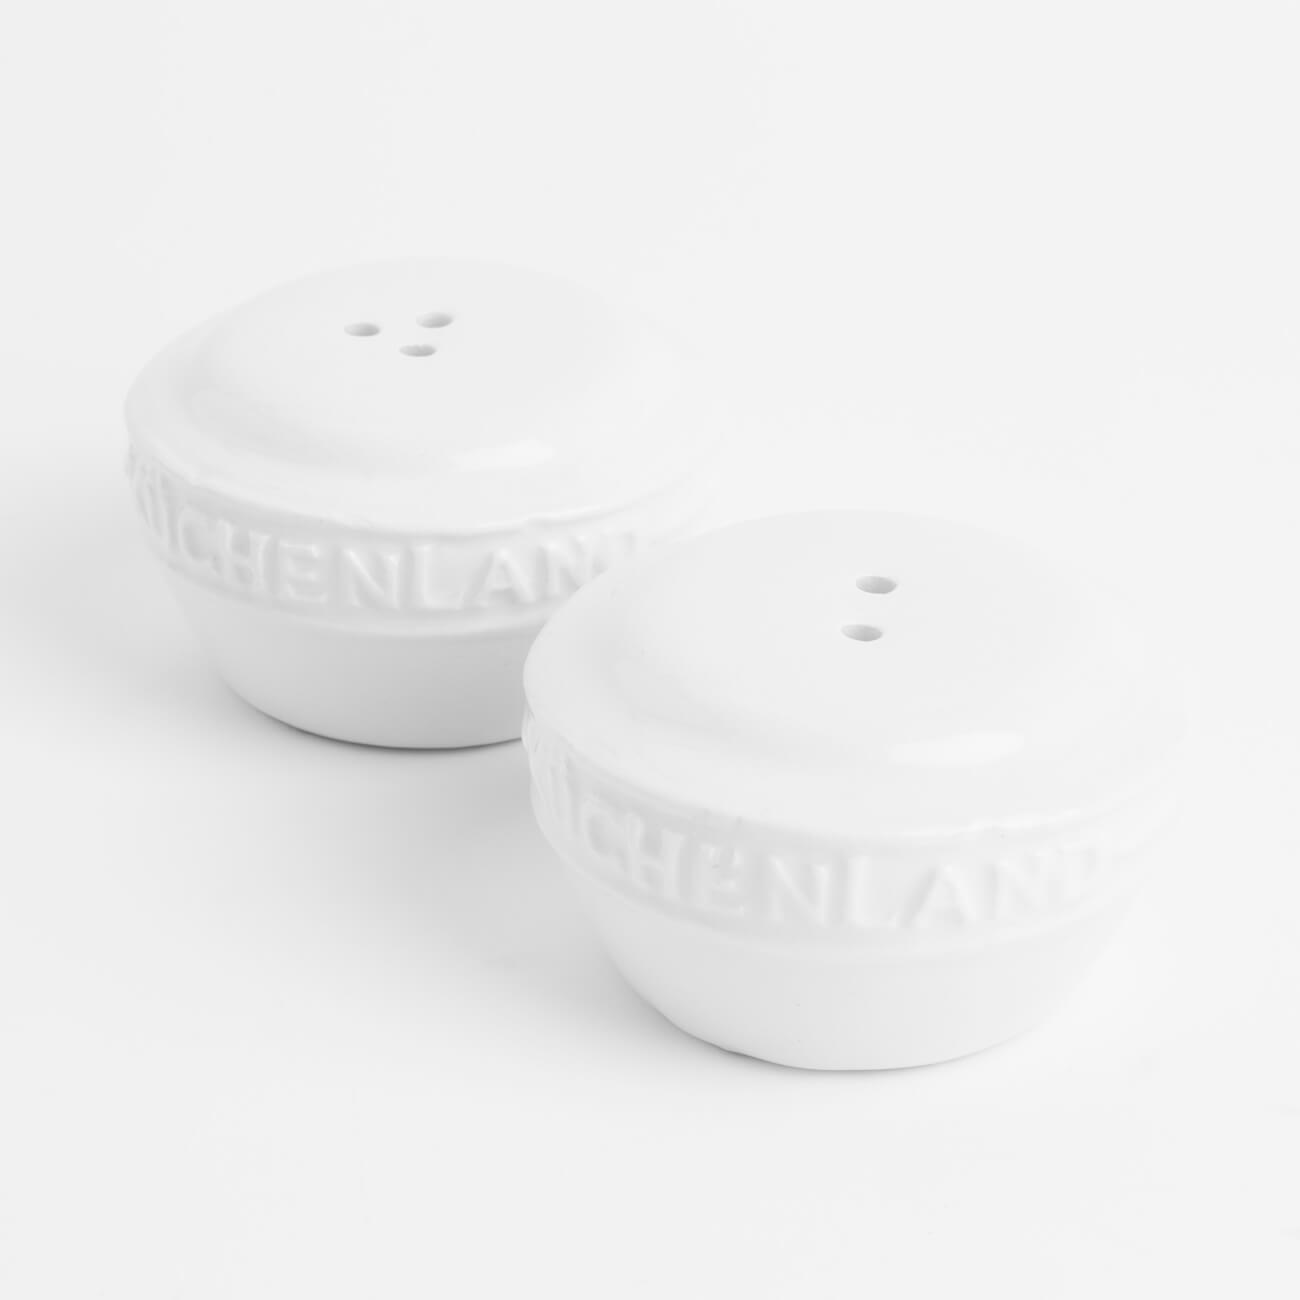 Набор для соли и перца, 3 см, керамика, белый, Ceramo набор для специй керамика 5 шт белый daniks классик hc444r n1